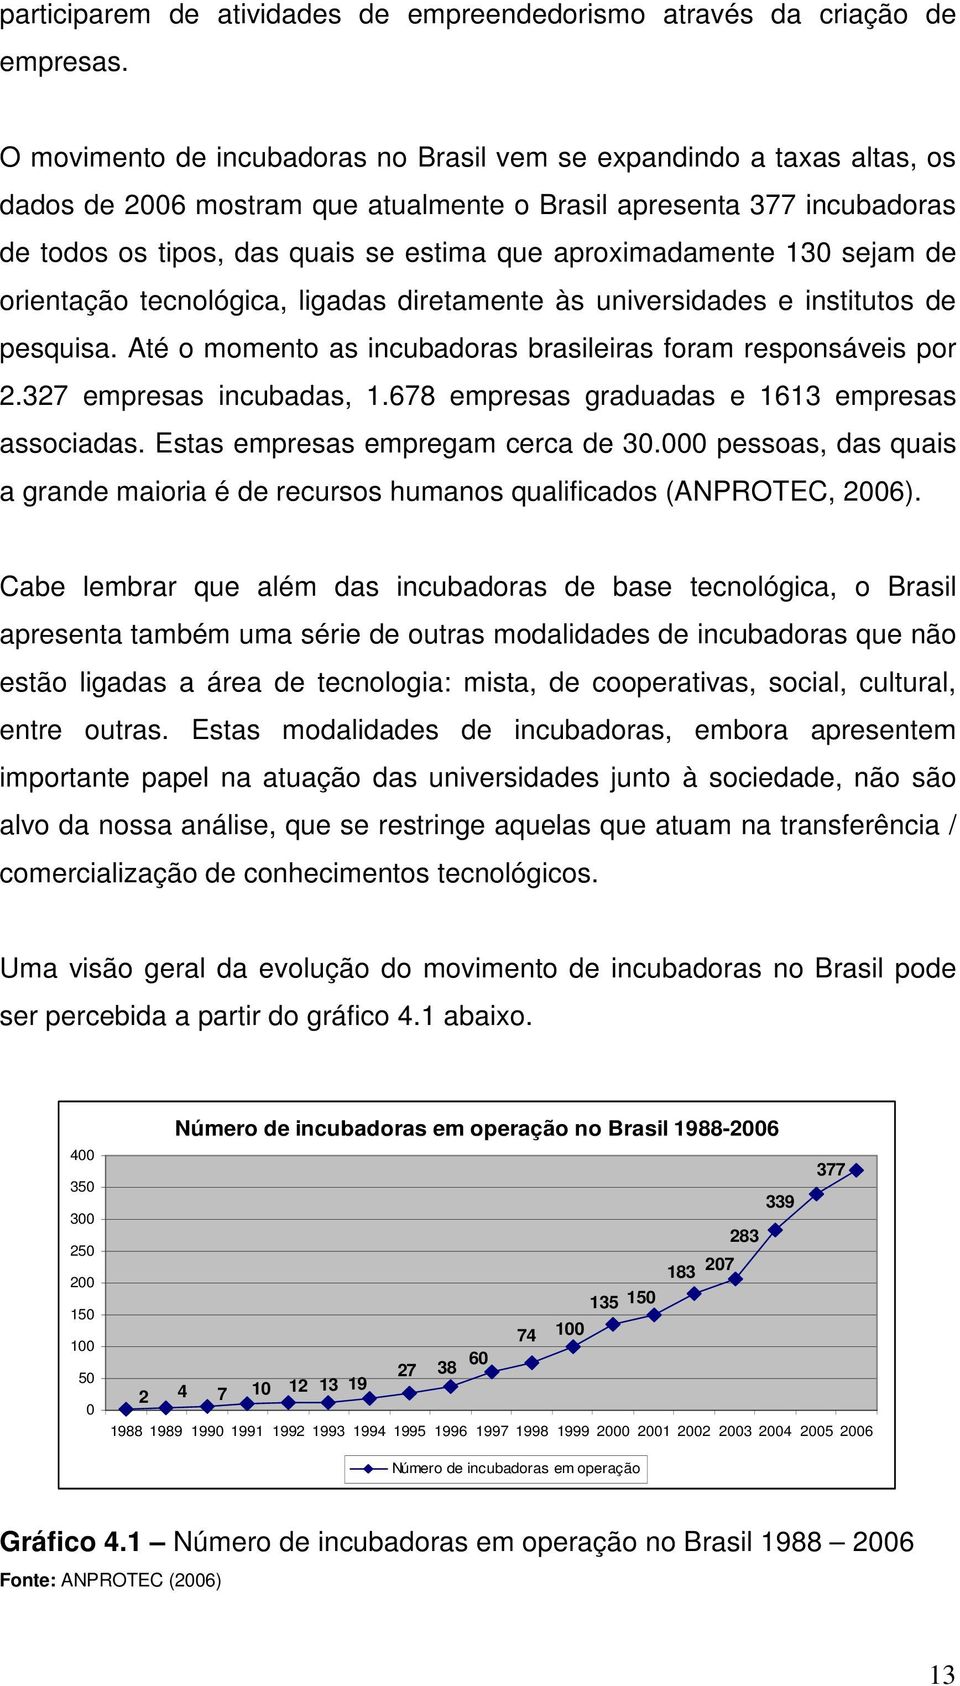 aproximadamente 130 sejam de orientação tecnológica, ligadas diretamente às universidades e institutos de pesquisa. Até o momento as incubadoras brasileiras foram responsáveis por 2.